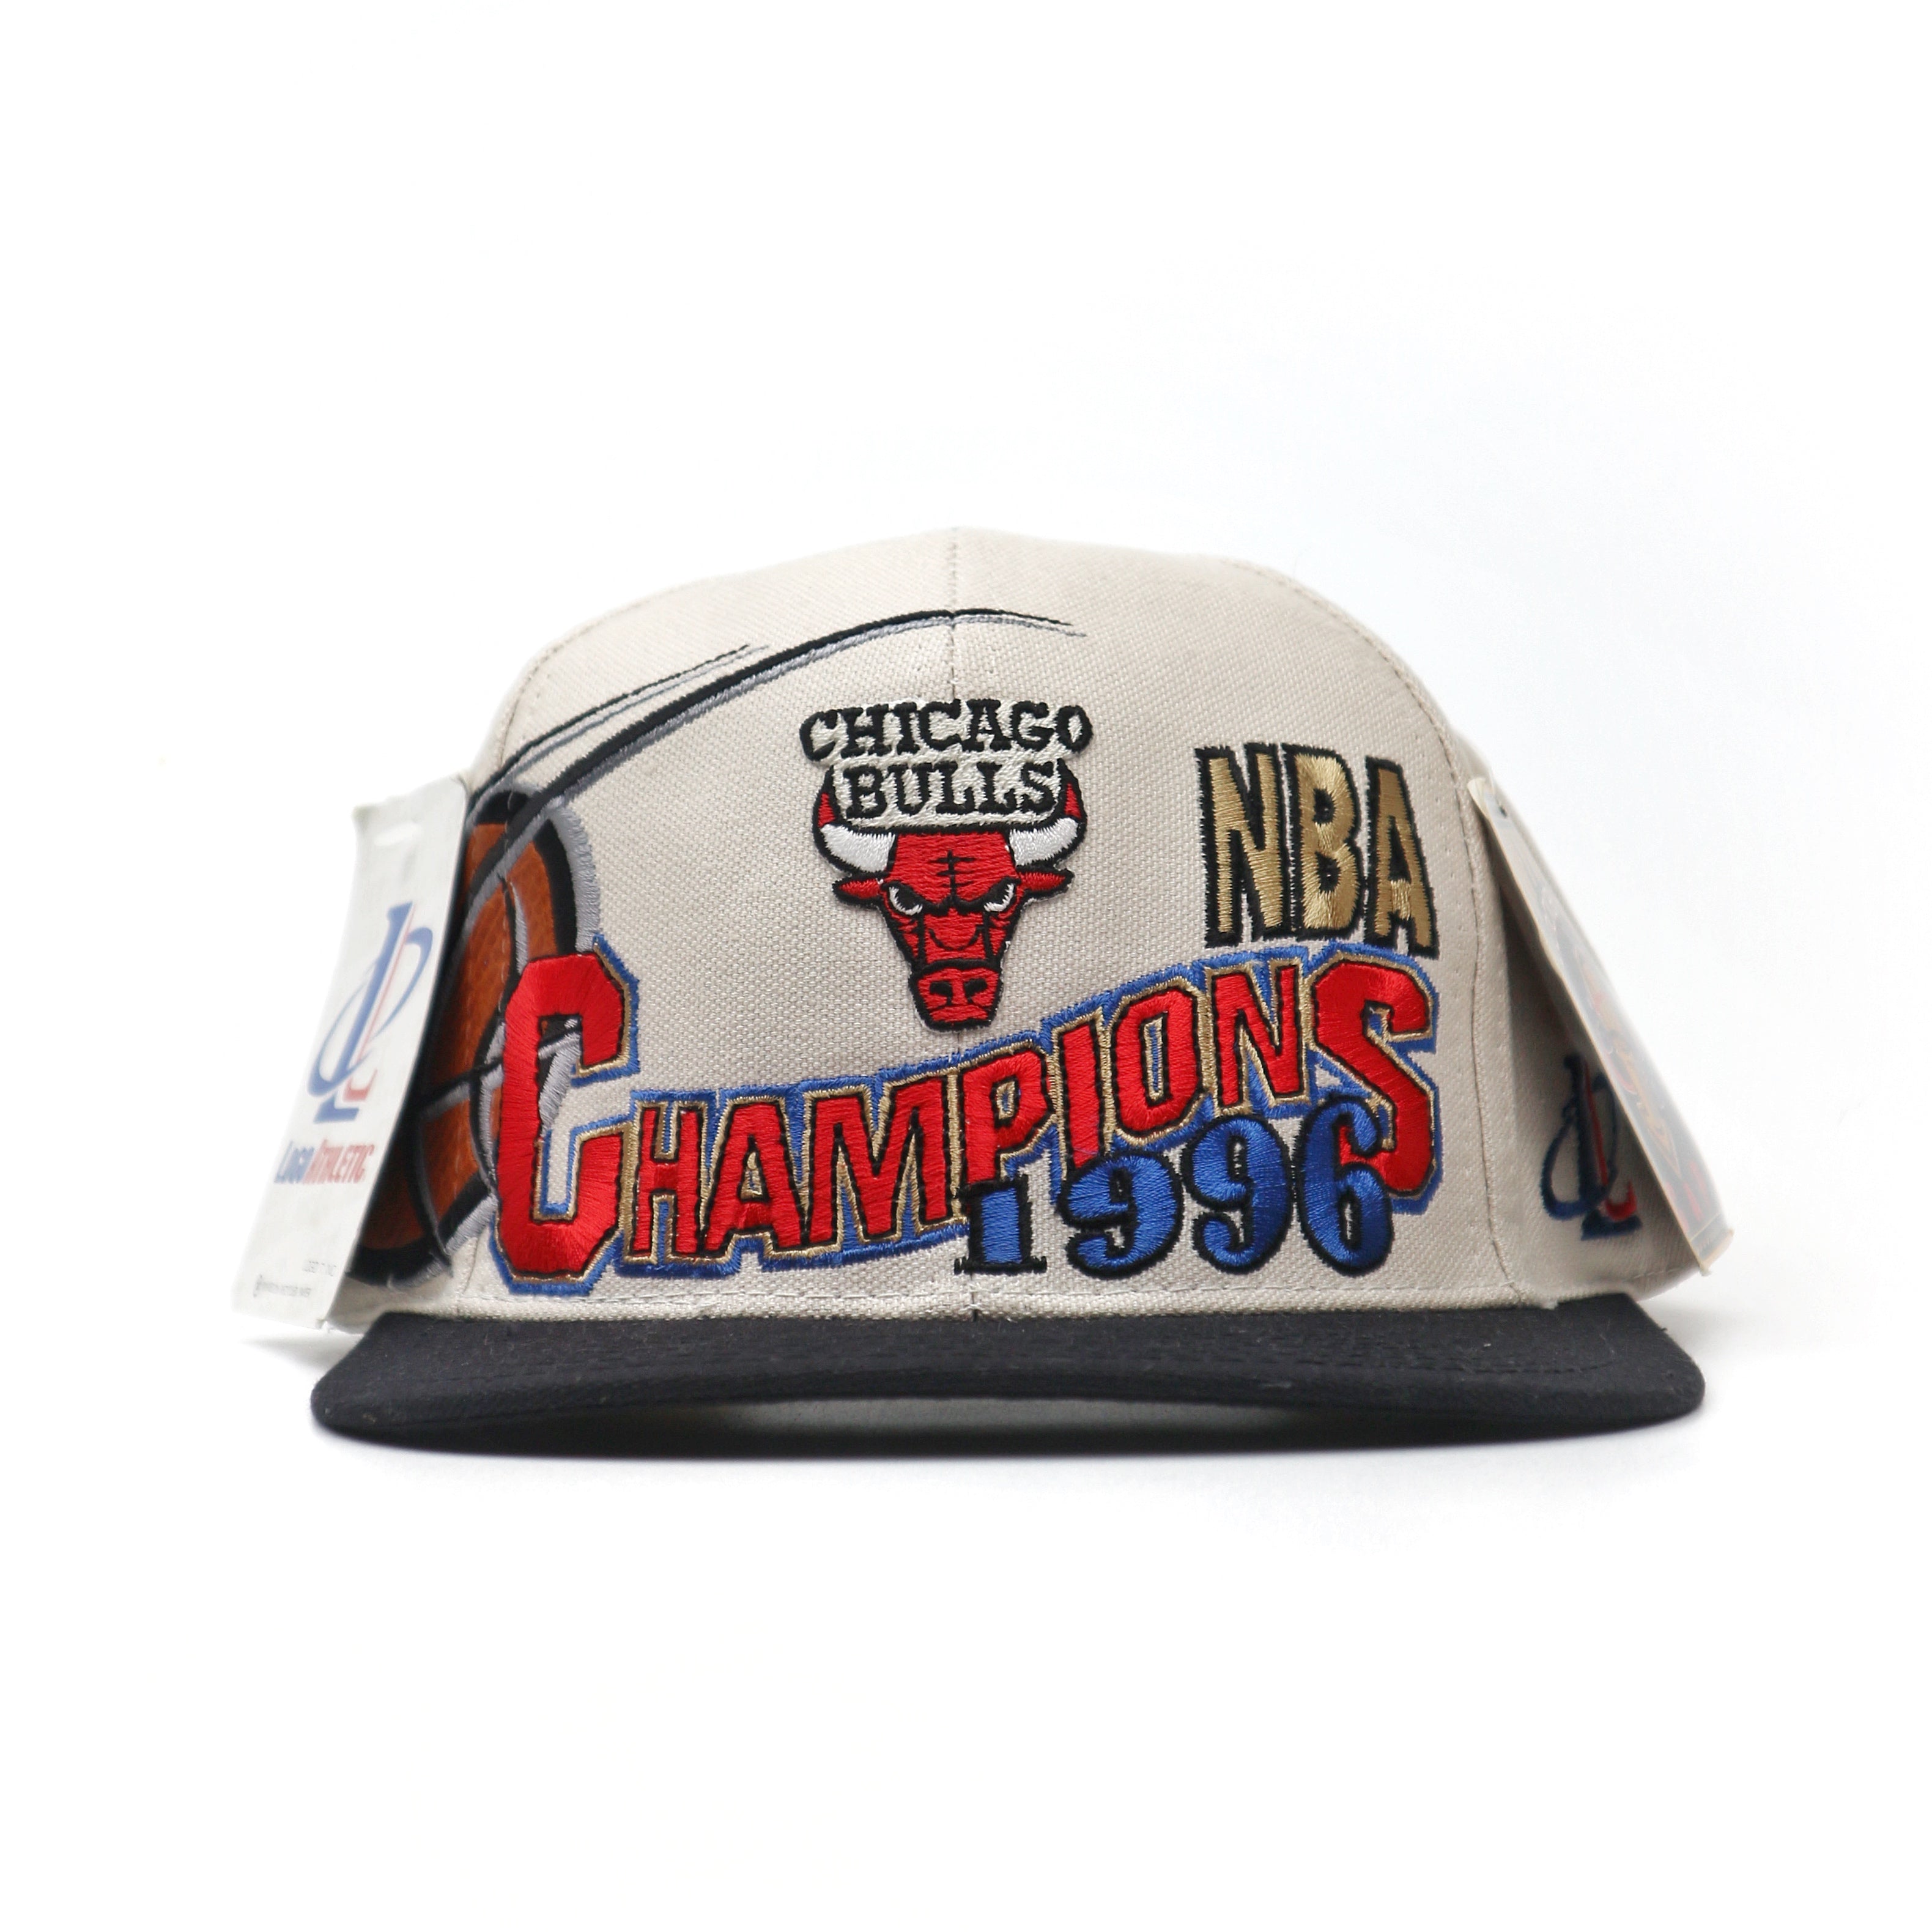 VINTAGE CHICAGO BULLS 1996 NBA CHAMPIONS LOCKER ROOM SNAPBACK CAP